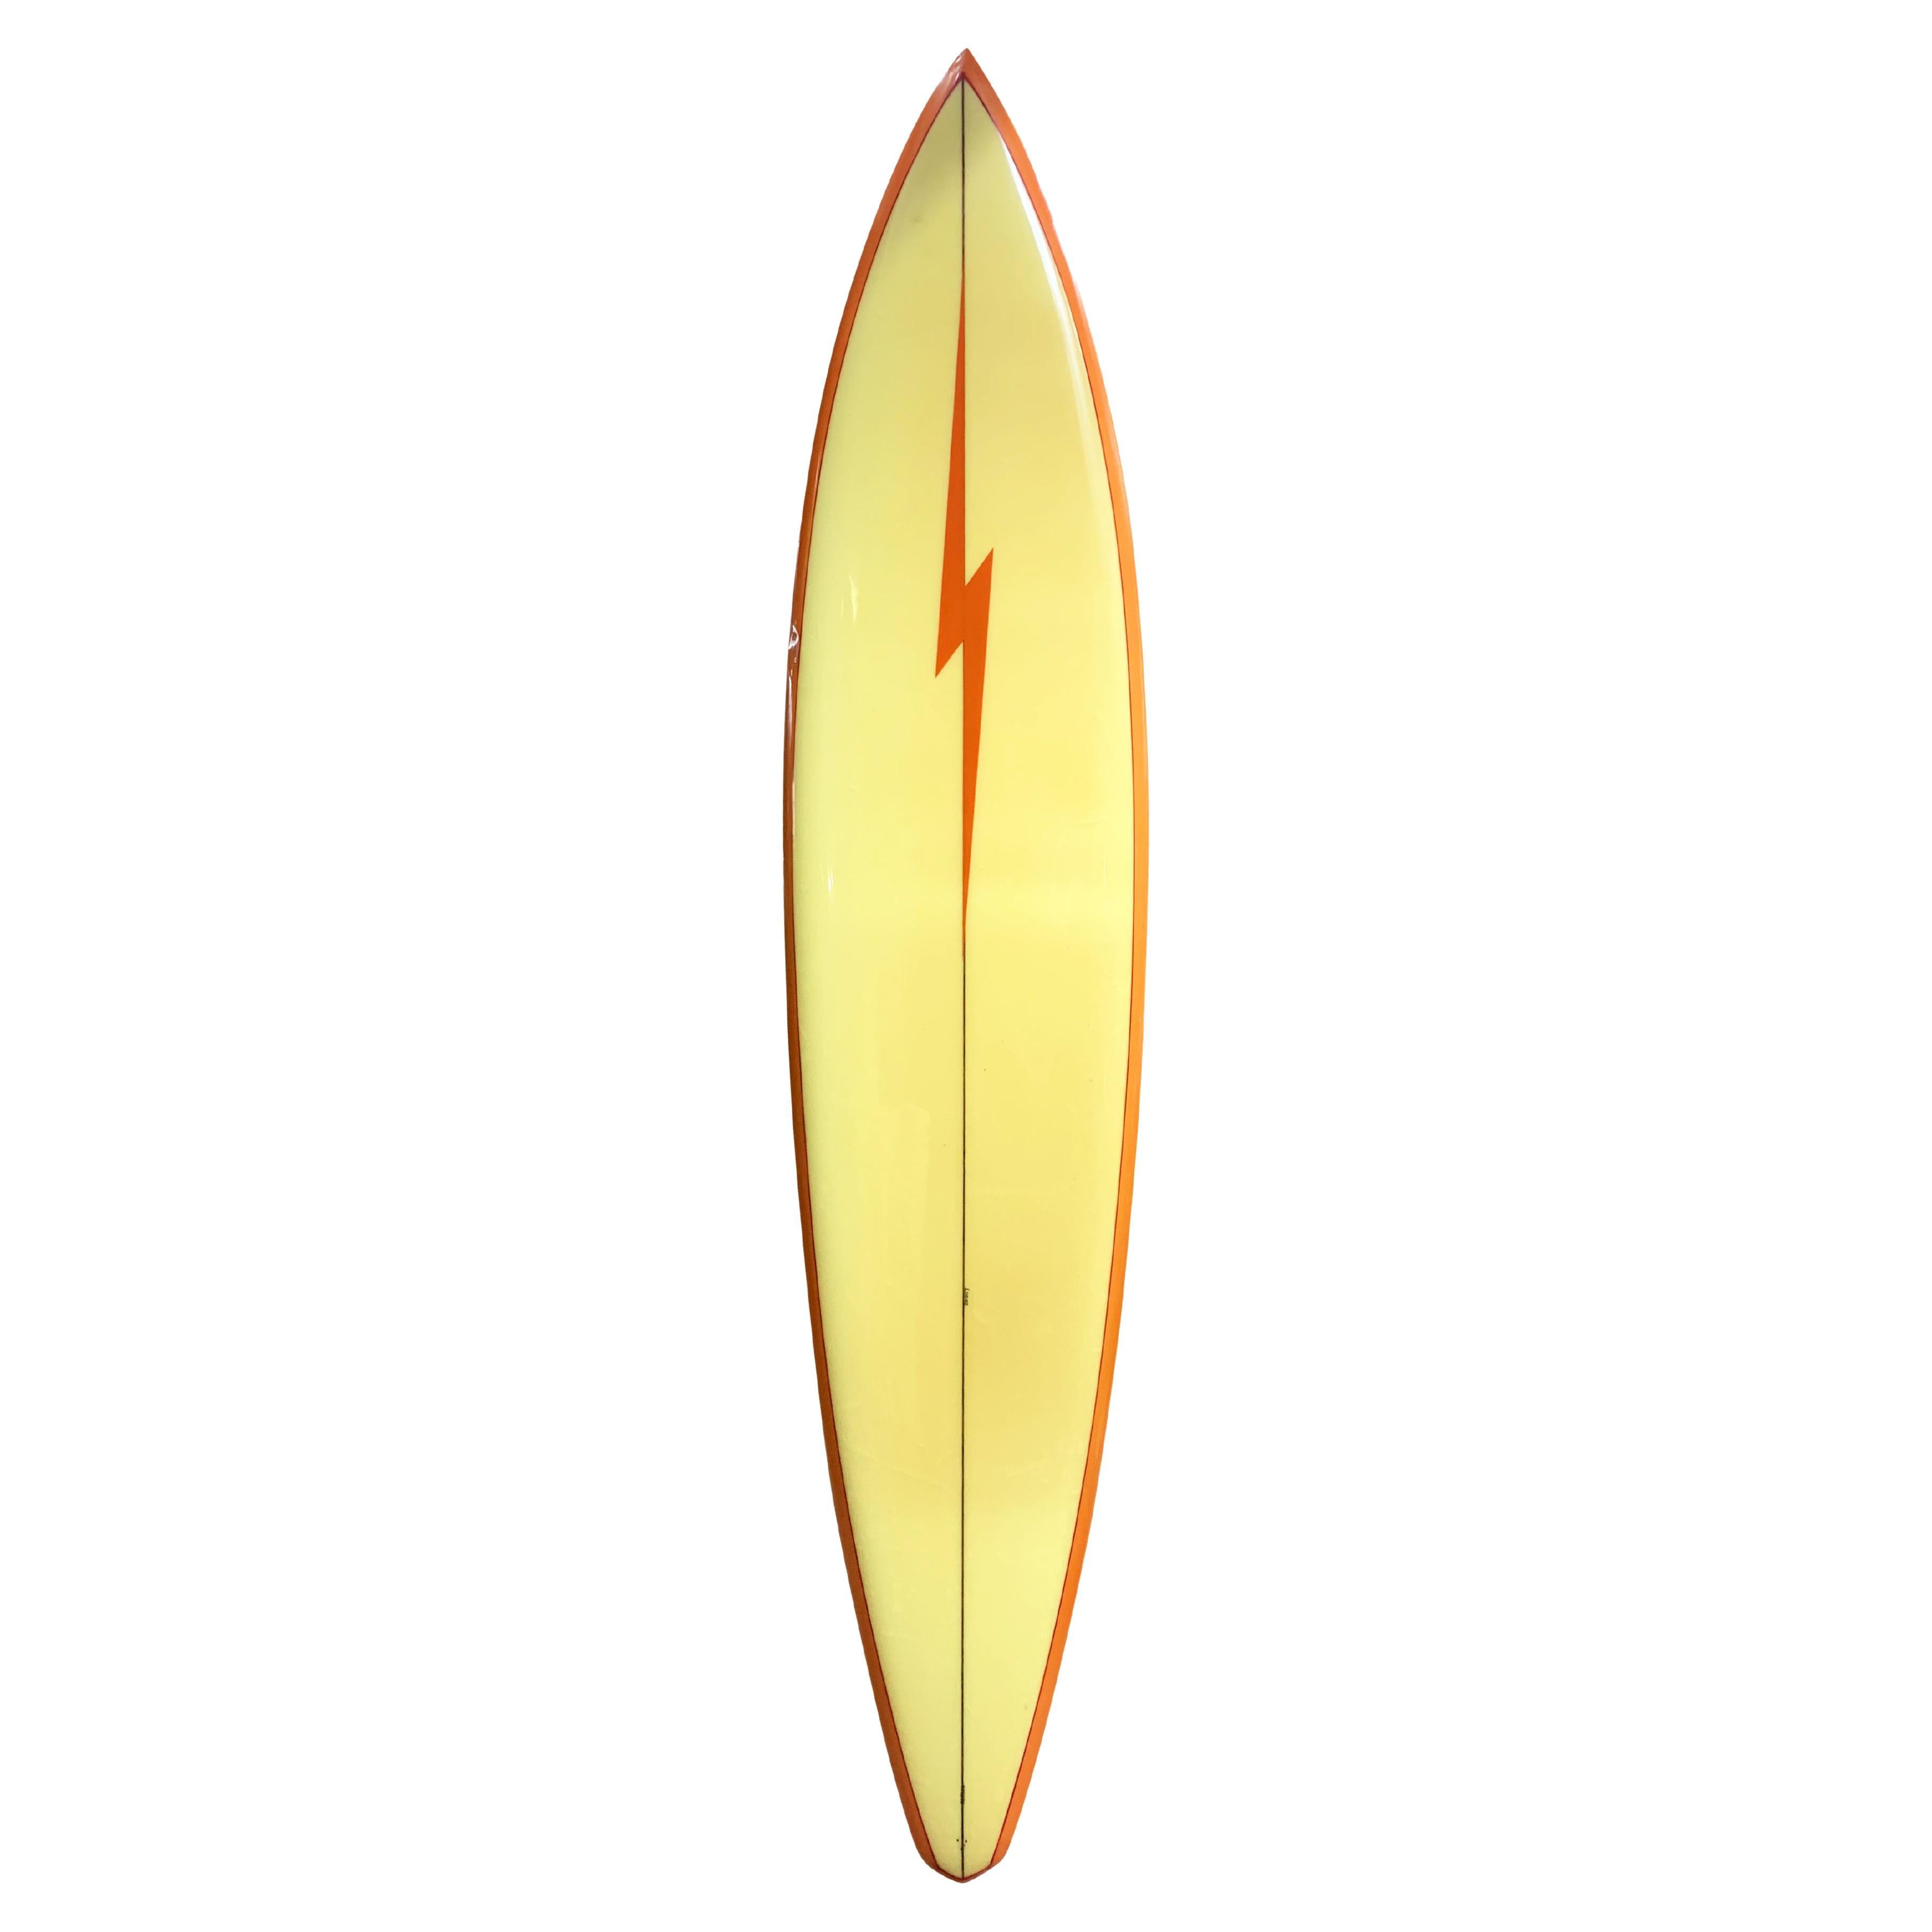 Vintage 1975 Gerry Lopez Shaped Lightning Bolt Surfboard